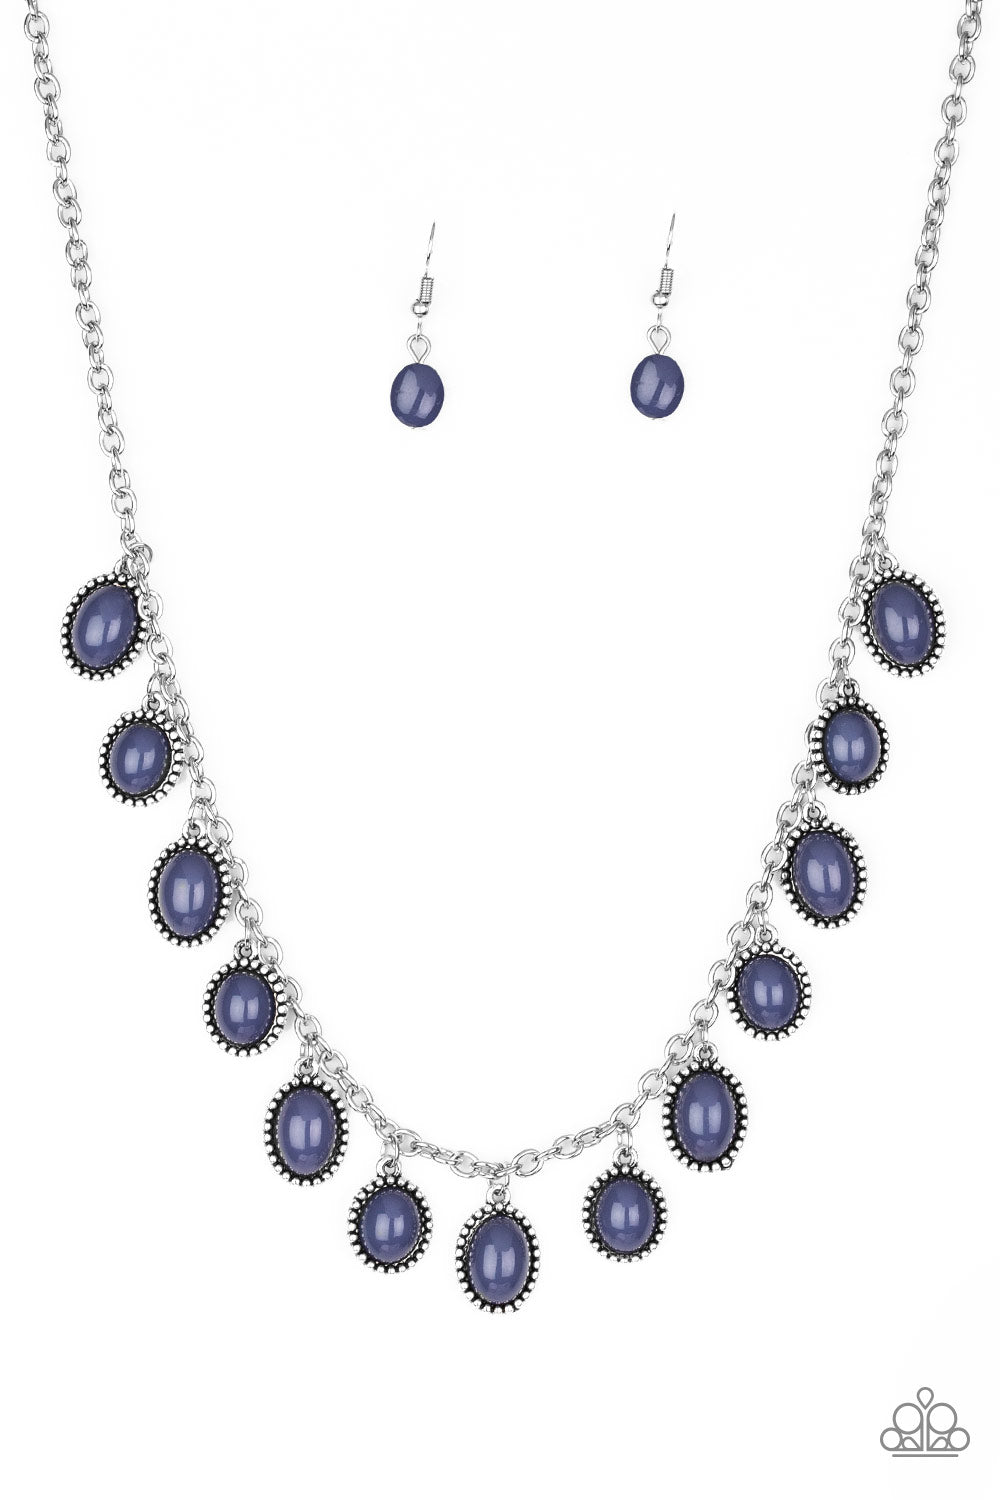 Make Some ROAM! - Blue Necklace Set - Princess Glam Shop